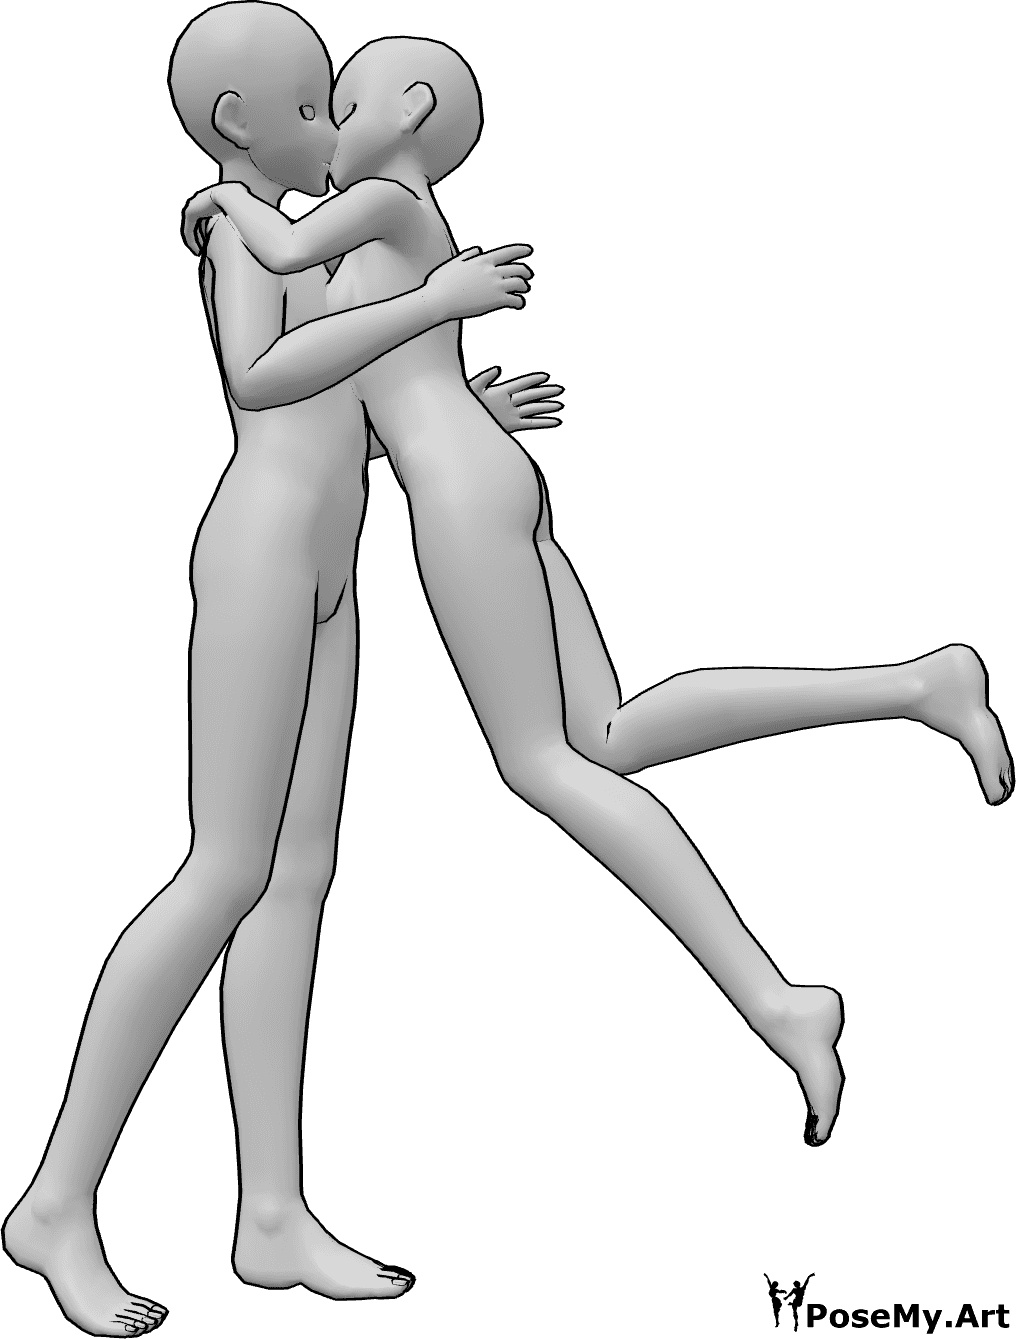 Riferimento alle pose- Posa del bacio a sorpresa in stile anime - La femmina di Anime salta e abbraccia e bacia a sorpresa il maschio.